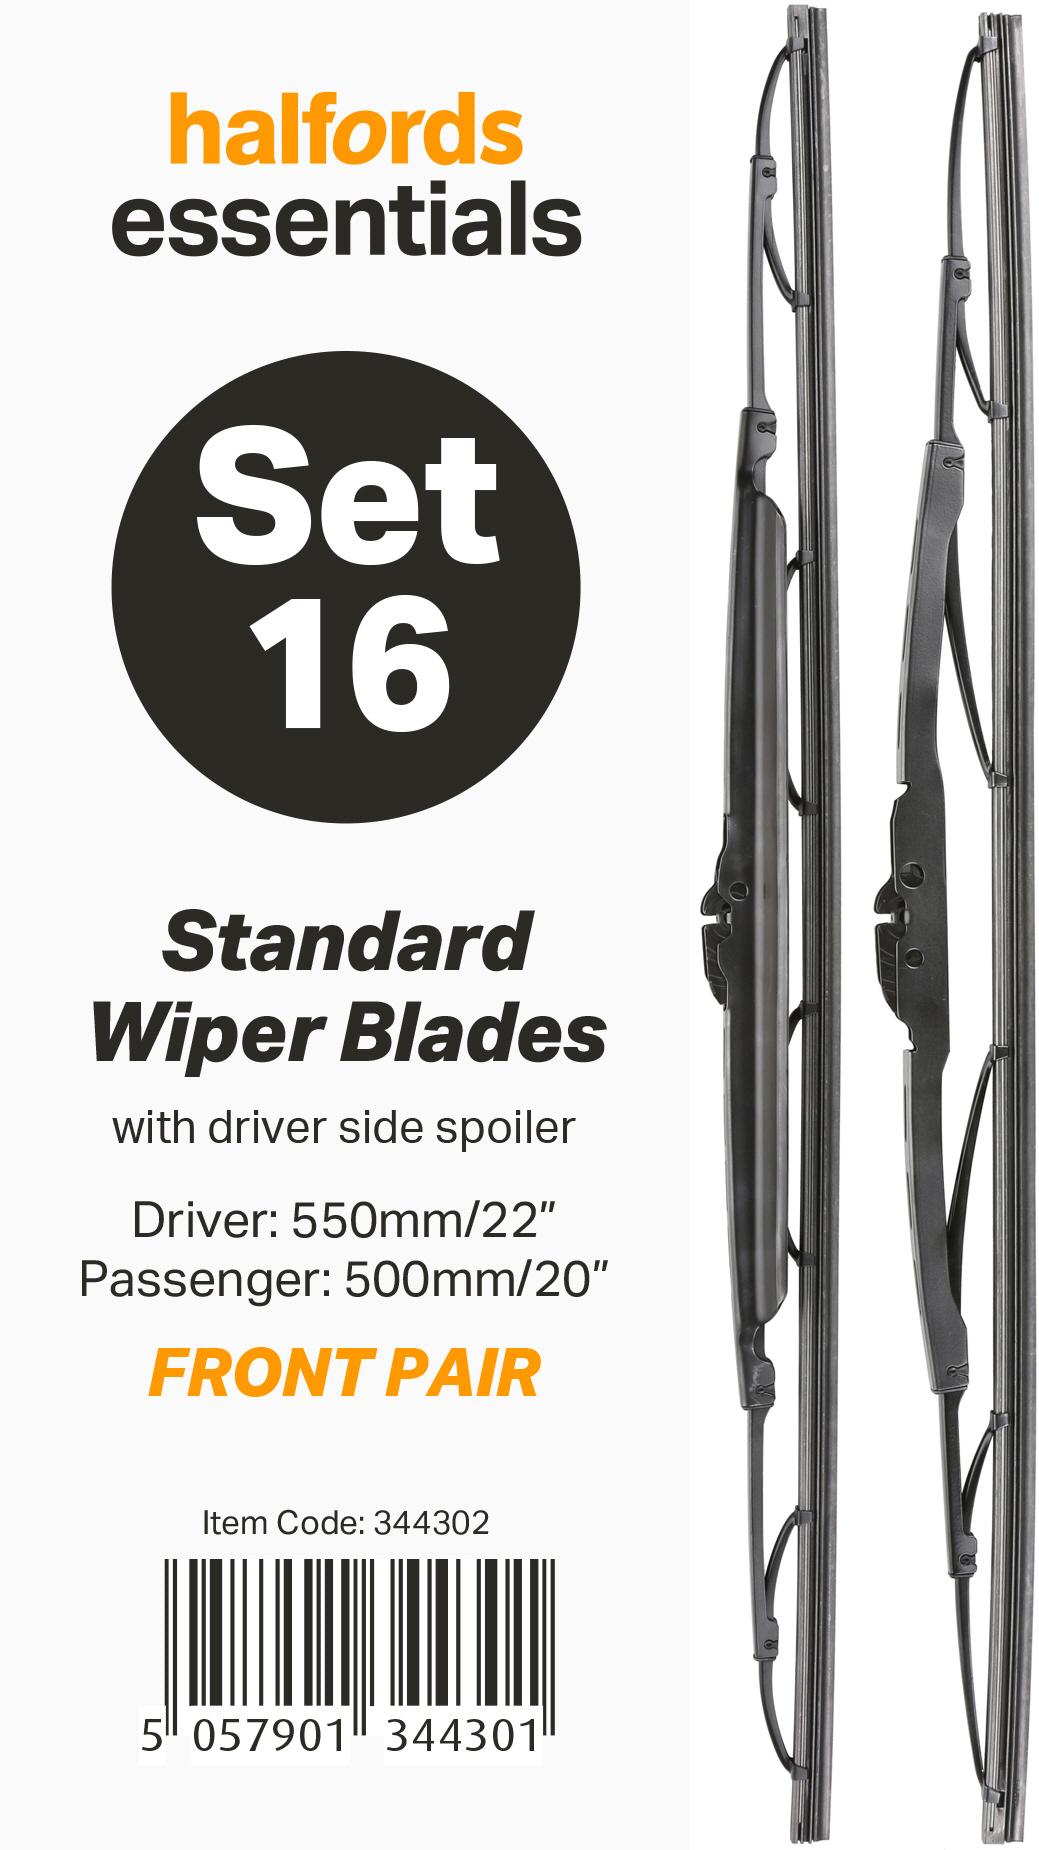 Halfords Essentials Wiper Blade Set 16